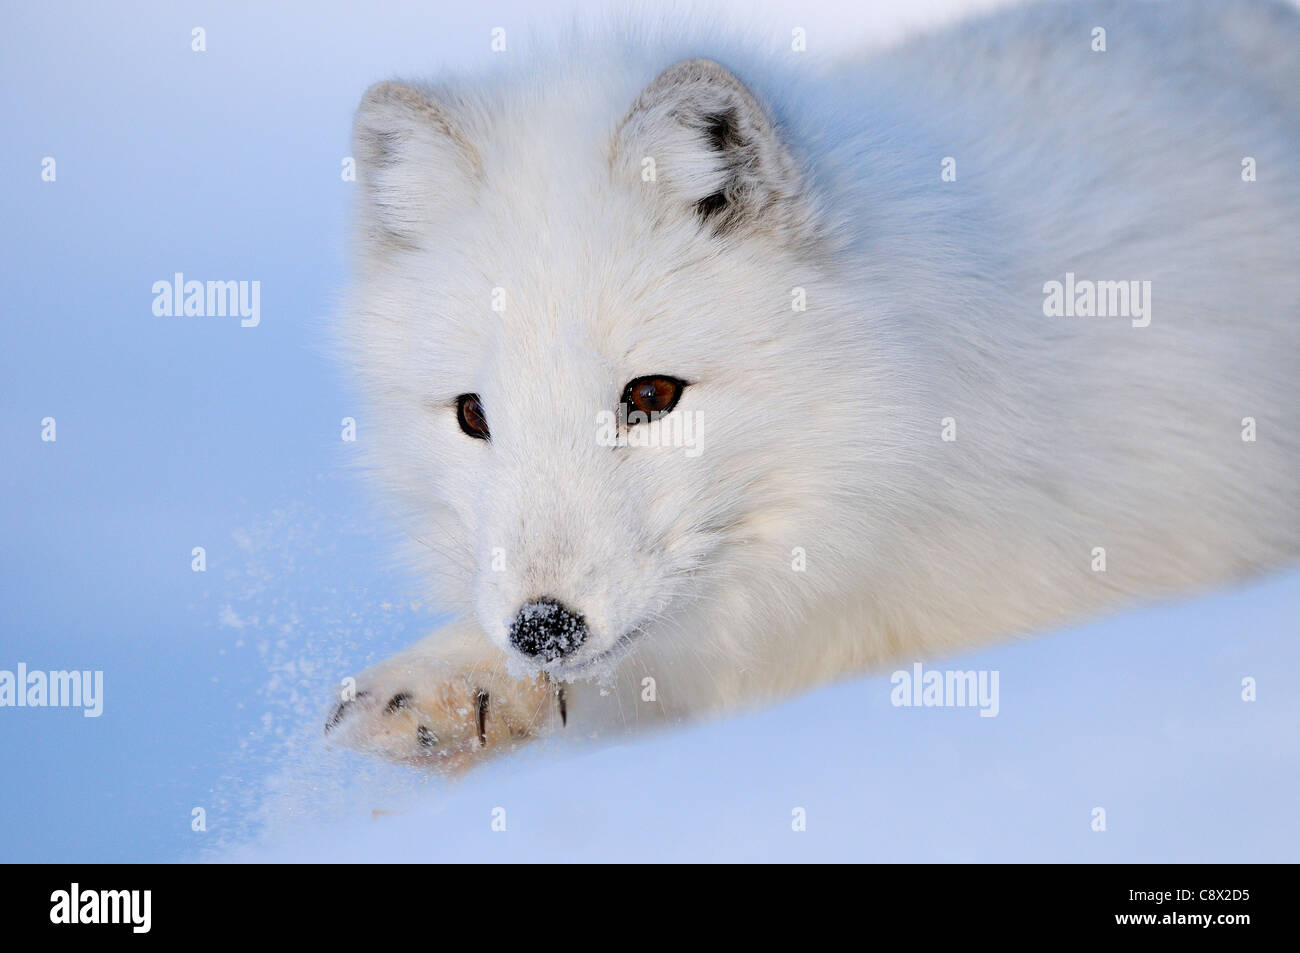 Le renard arctique (Alopex lagopus) close-up, sur la neige, la Norvège prisonnier Banque D'Images